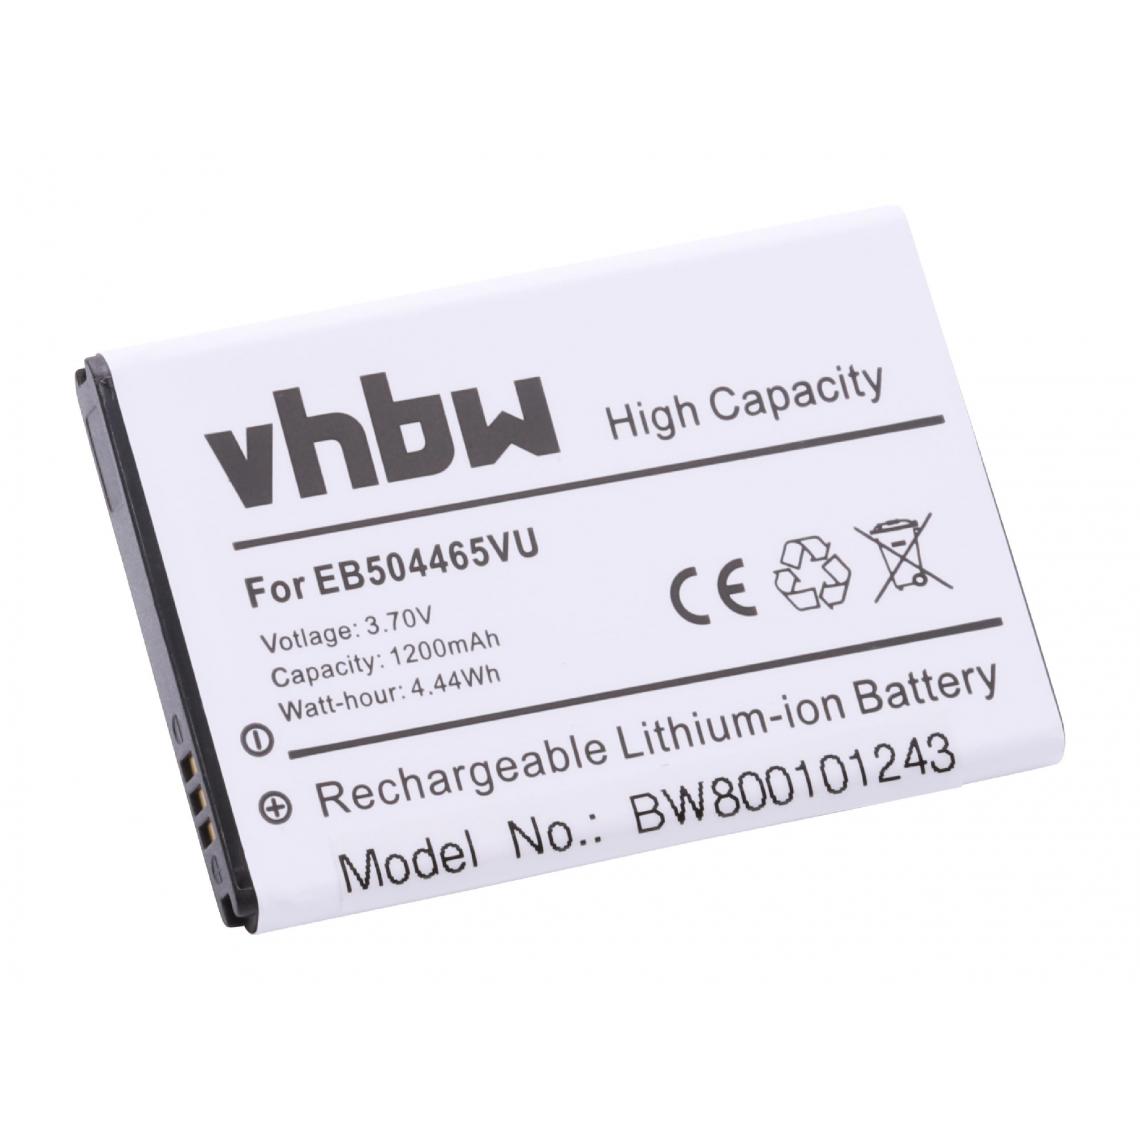 Vhbw - vhbw Batterie compatible avec Samsung GT-i8700 Omnia 7, GT-I8910C, GT-i8910 Omnia HD, GT-I8910U smartphone (1200mAh, 3,7V, Li-ion) - Batterie téléphone